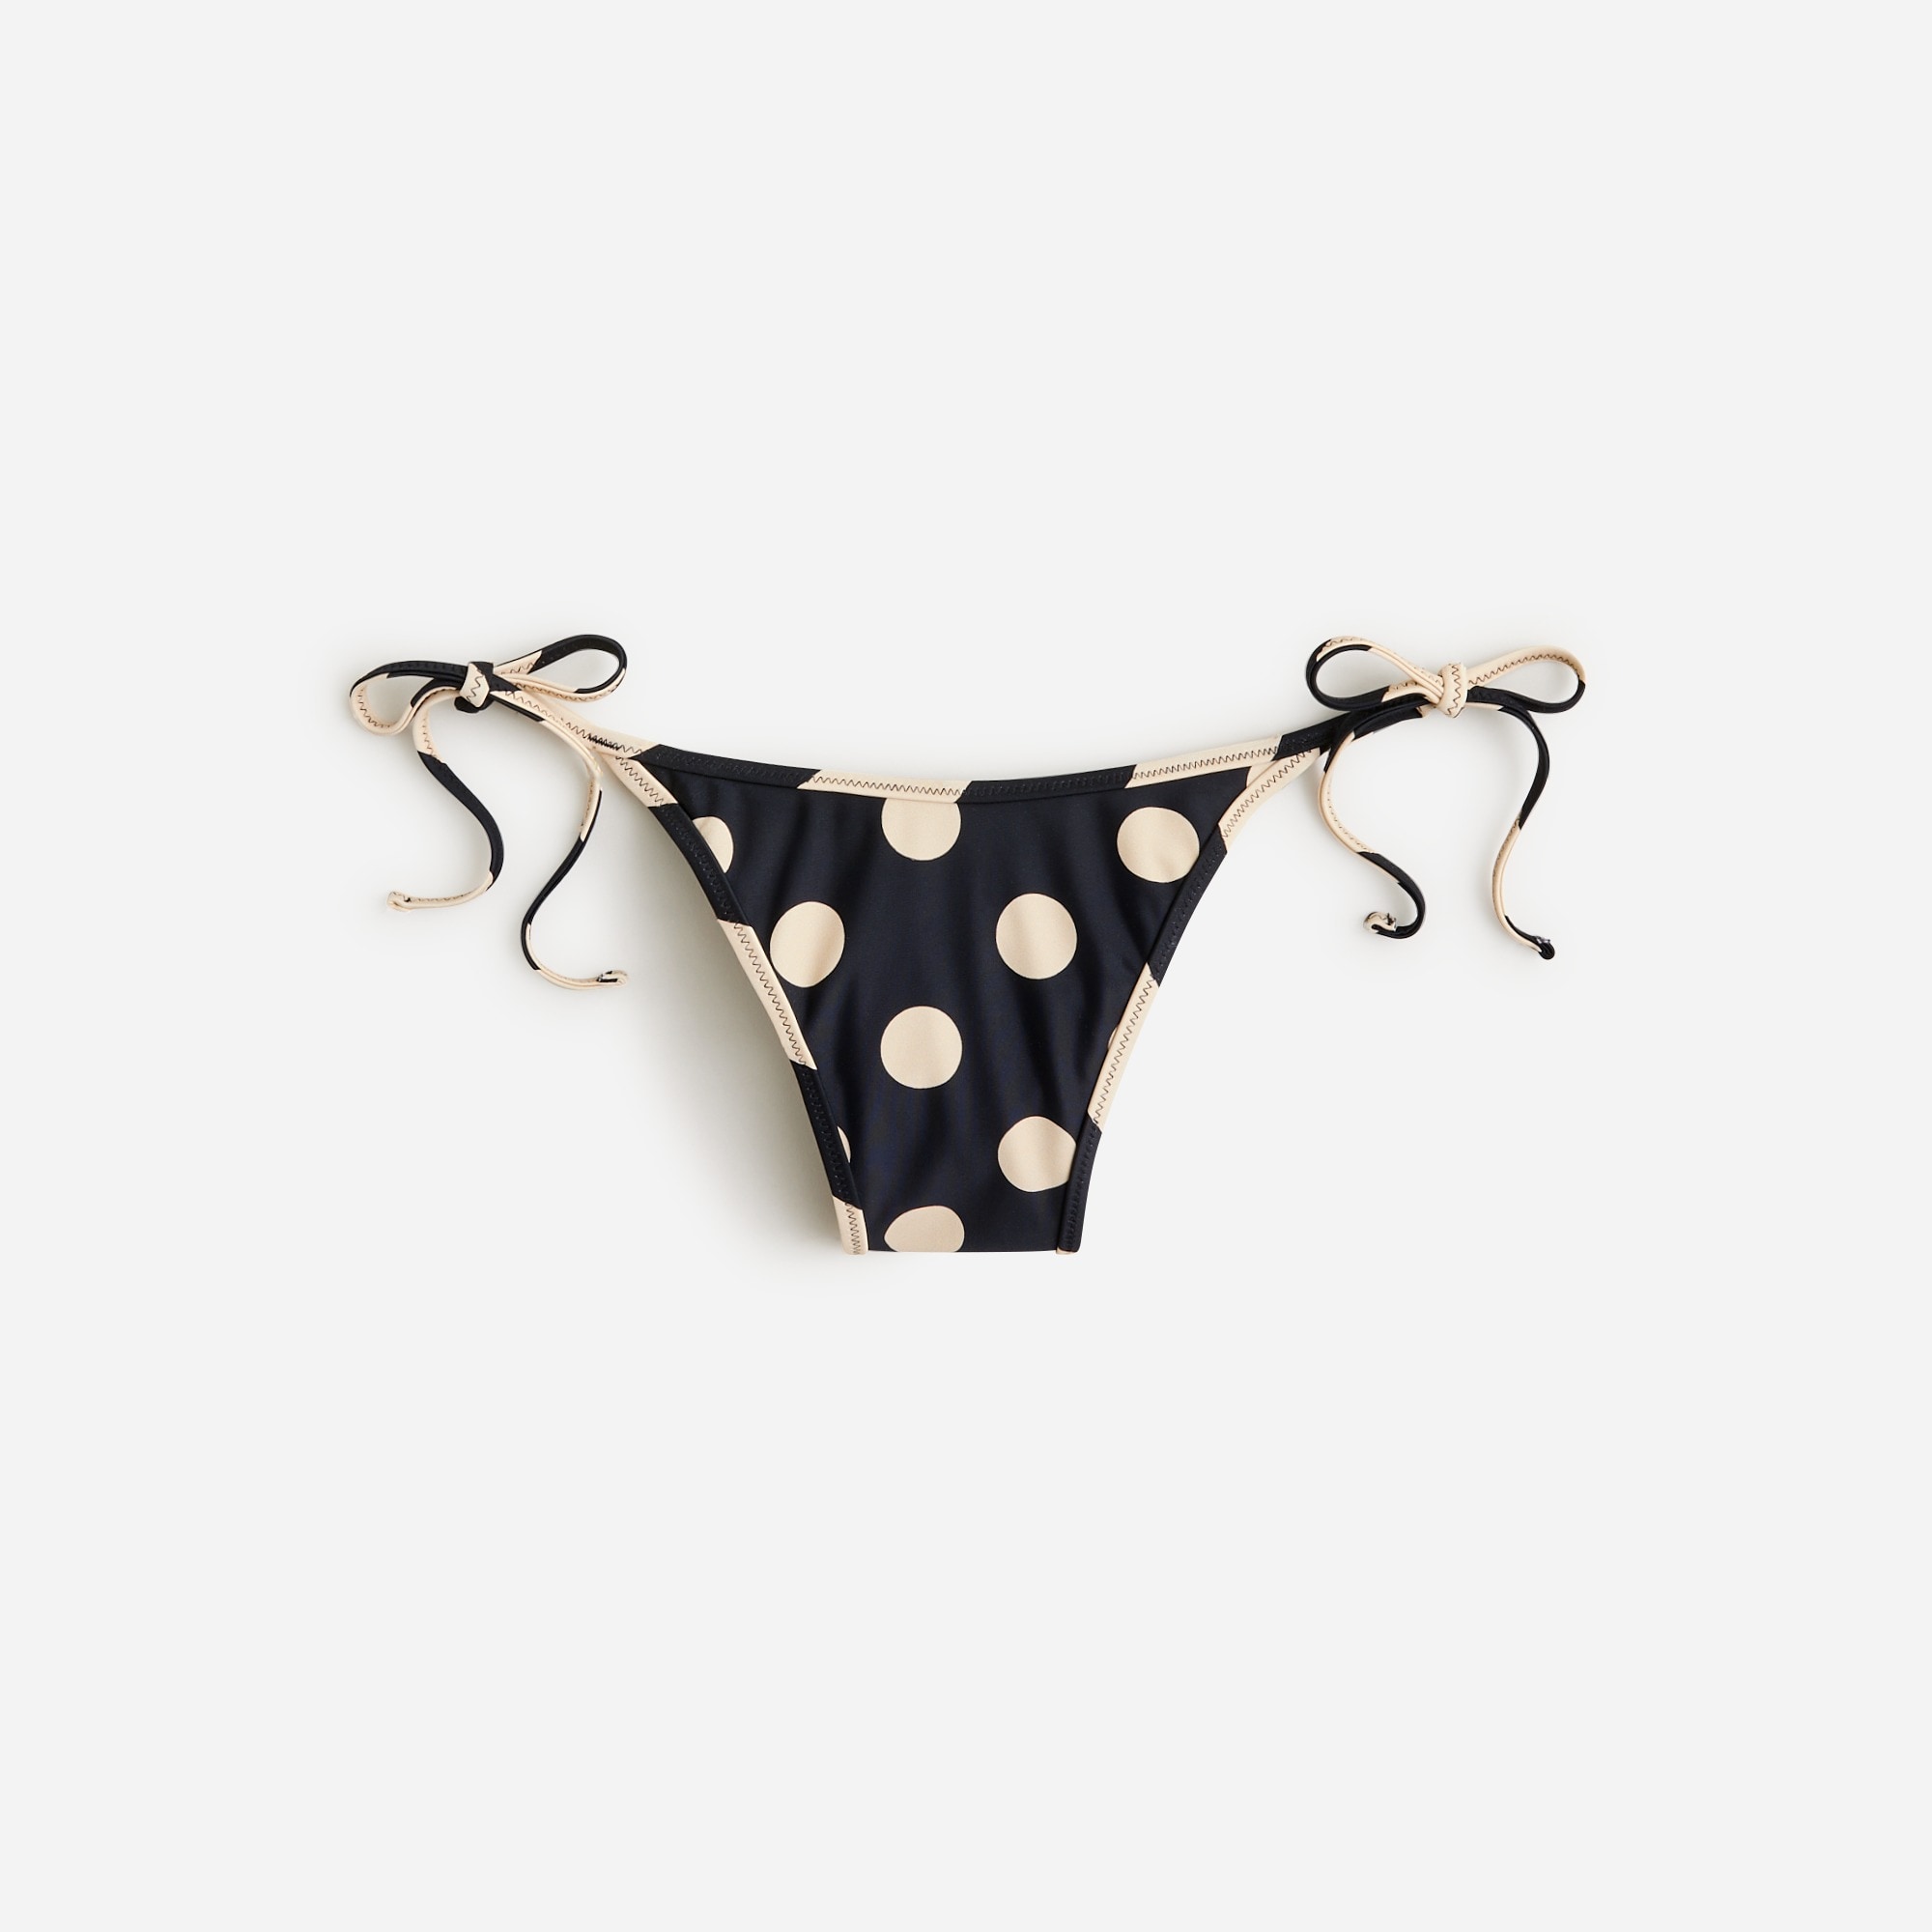  String hipster bikini bottom in reversible dot-stripe print